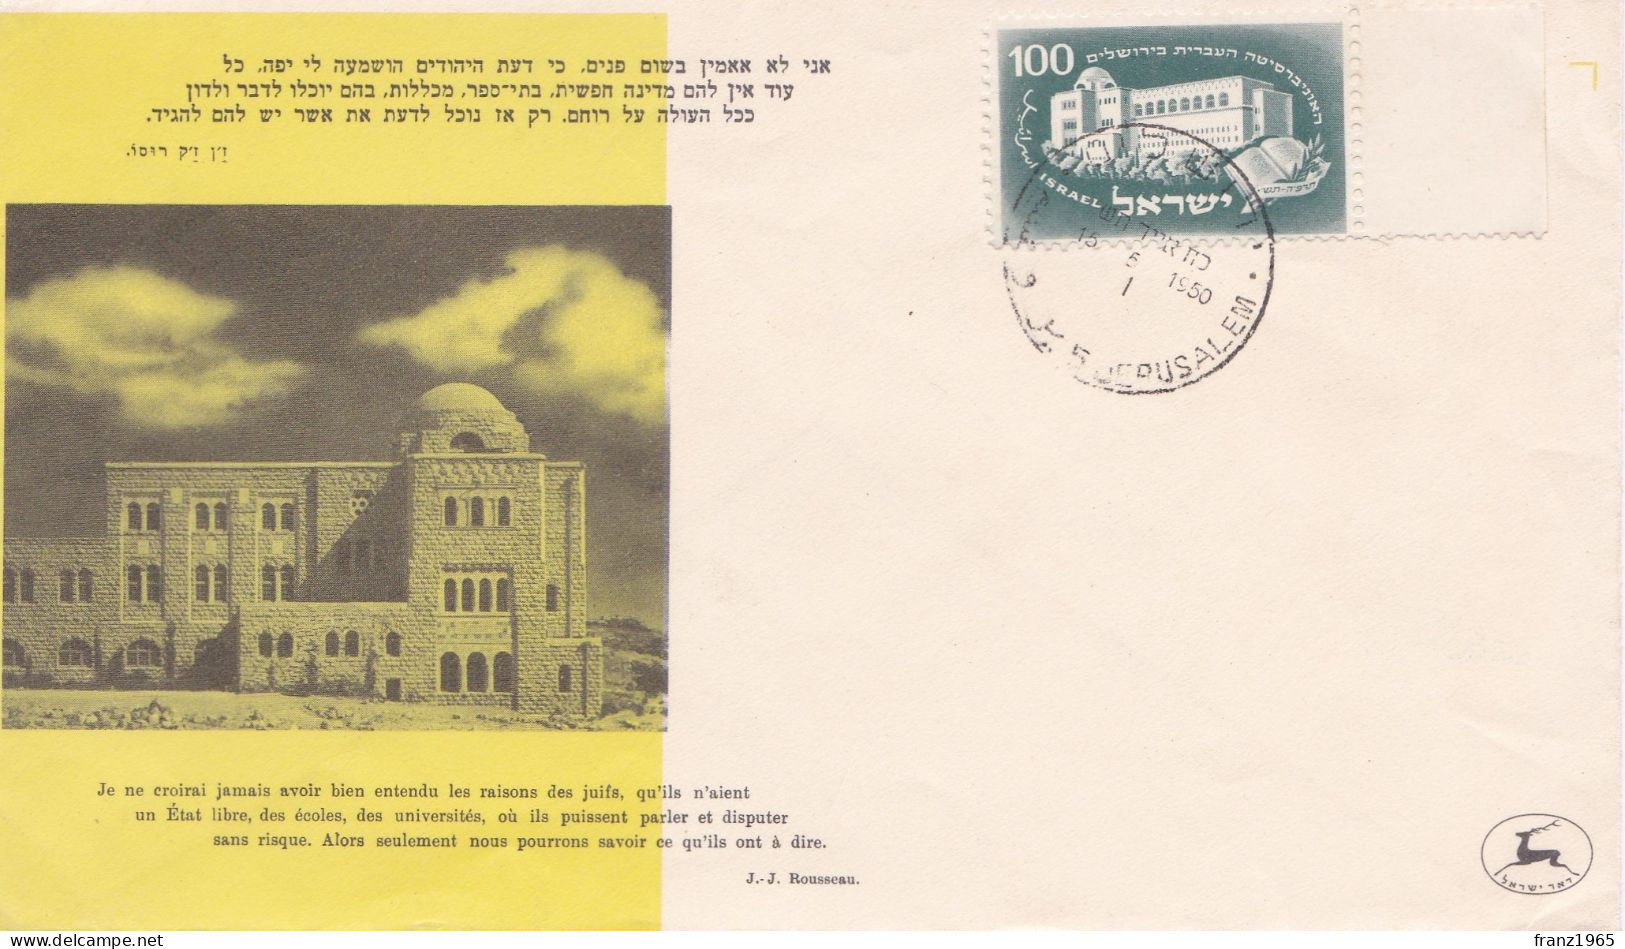 25 Years Hebrew University In Jerusalem - 1950 - FDC